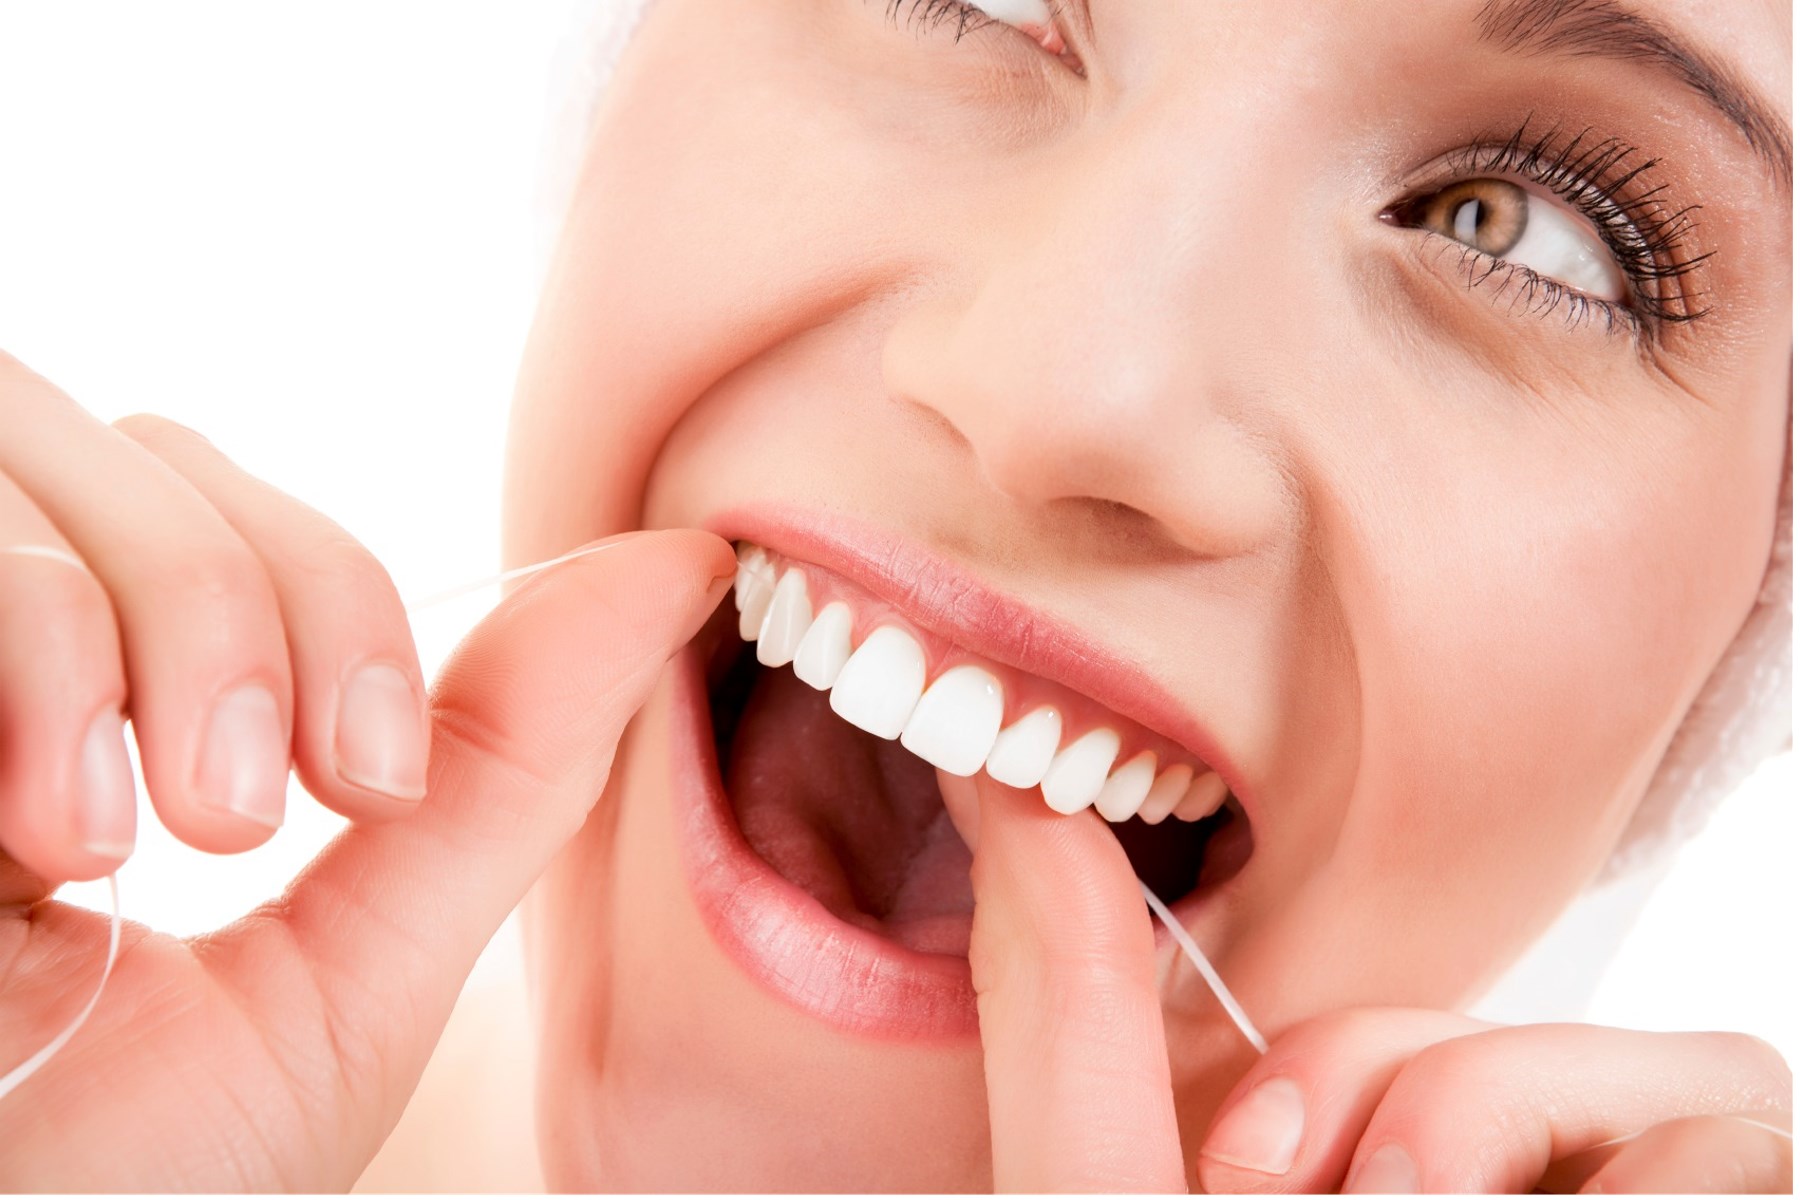 Sau khi ăn cần vệ sinh răng miệng thật kỹ để phòng ngừa đau nhức răng và phòng các bệnh về răng miệng